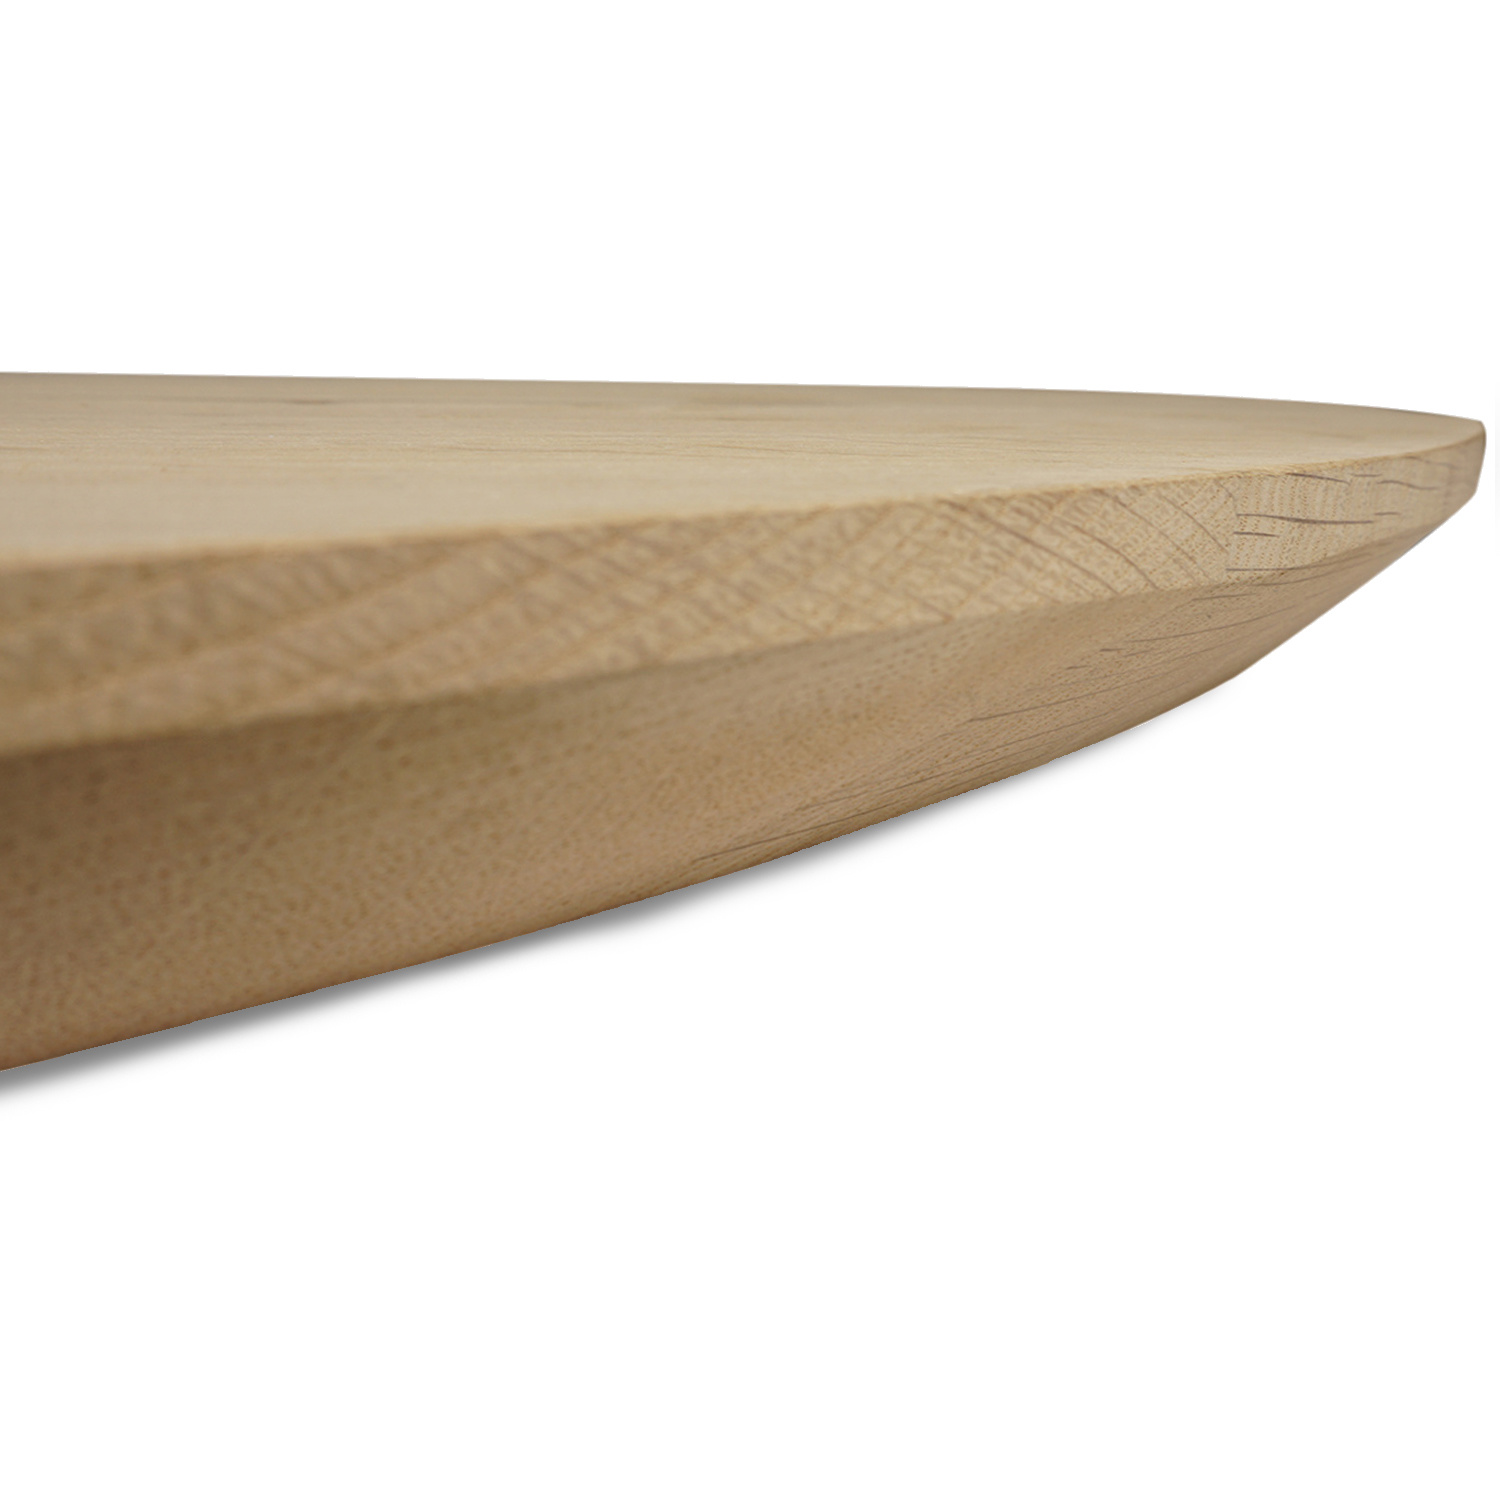  Ovaal eiken tafelblad - 2,7 cm dik (1-laag) - Diverse afmetingen - rustiek Europees eikenhout - met brede lamellen (circa 10-12 cm) - verlijmd kd 8-12%